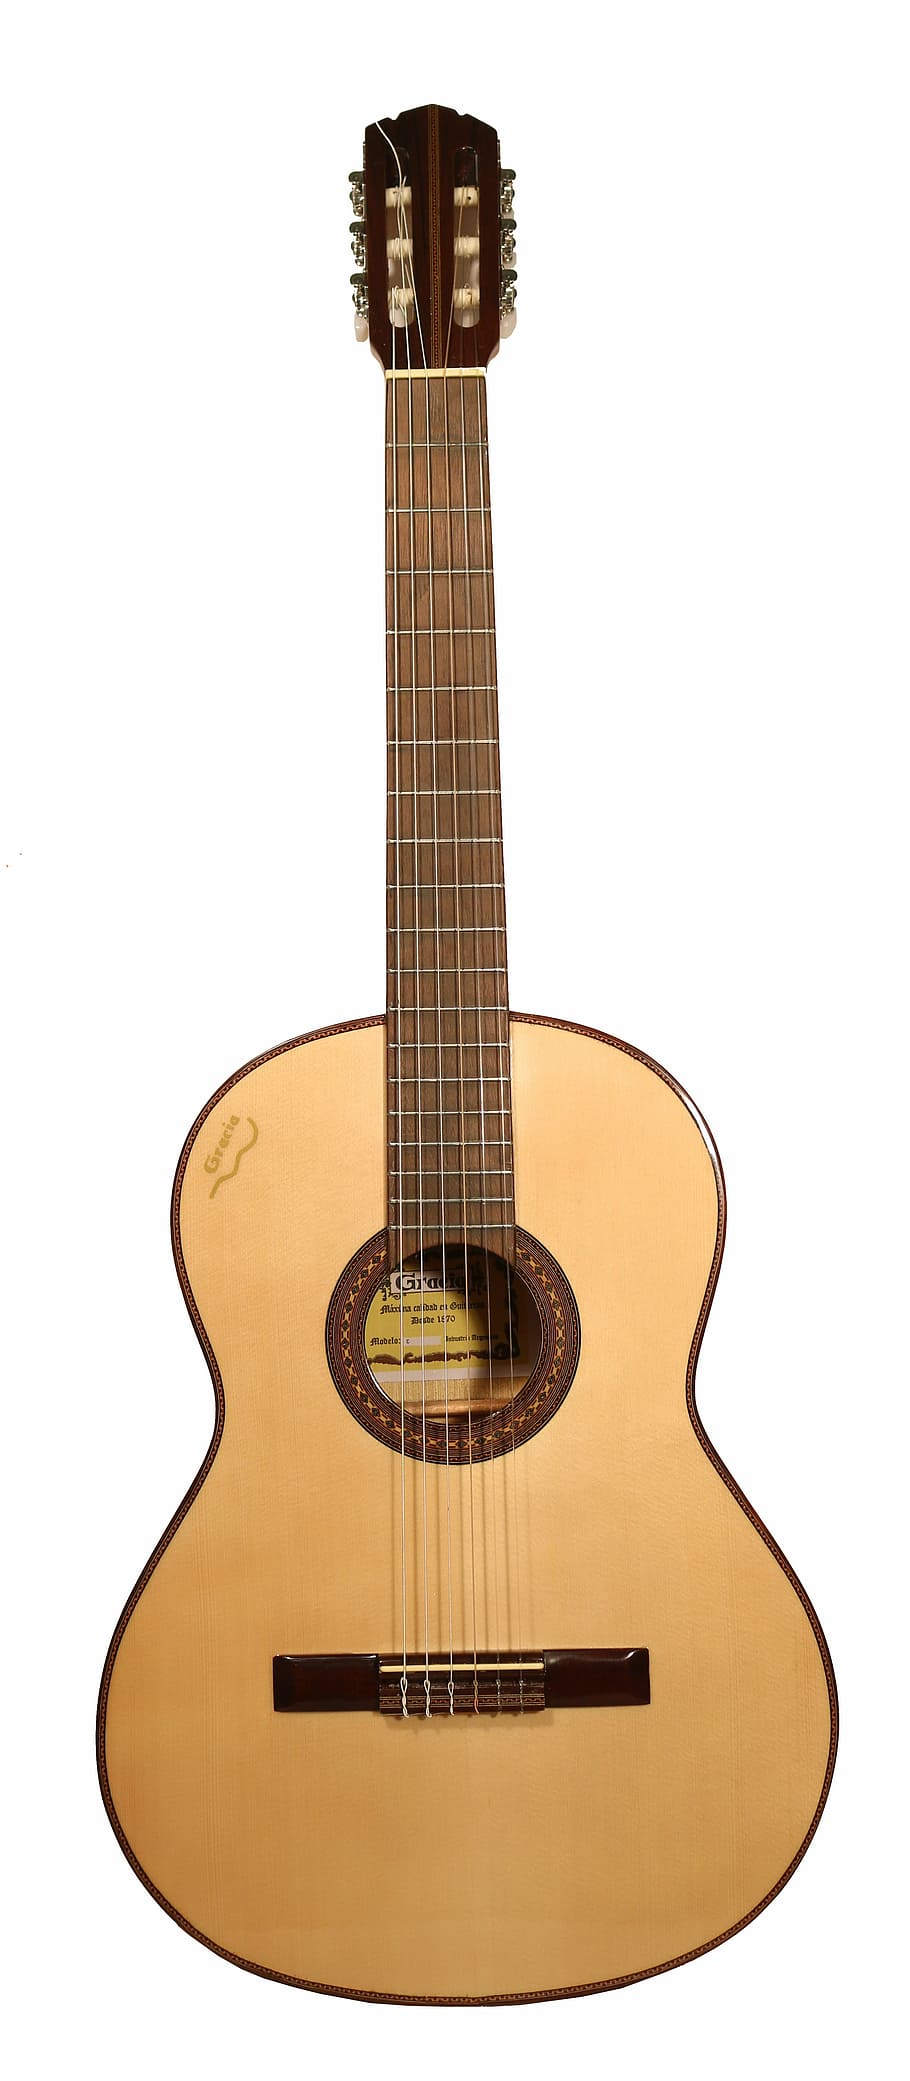 marrón, clásico, guitarra, blanco, fondo, luthier, español, diapasón, caja, madera